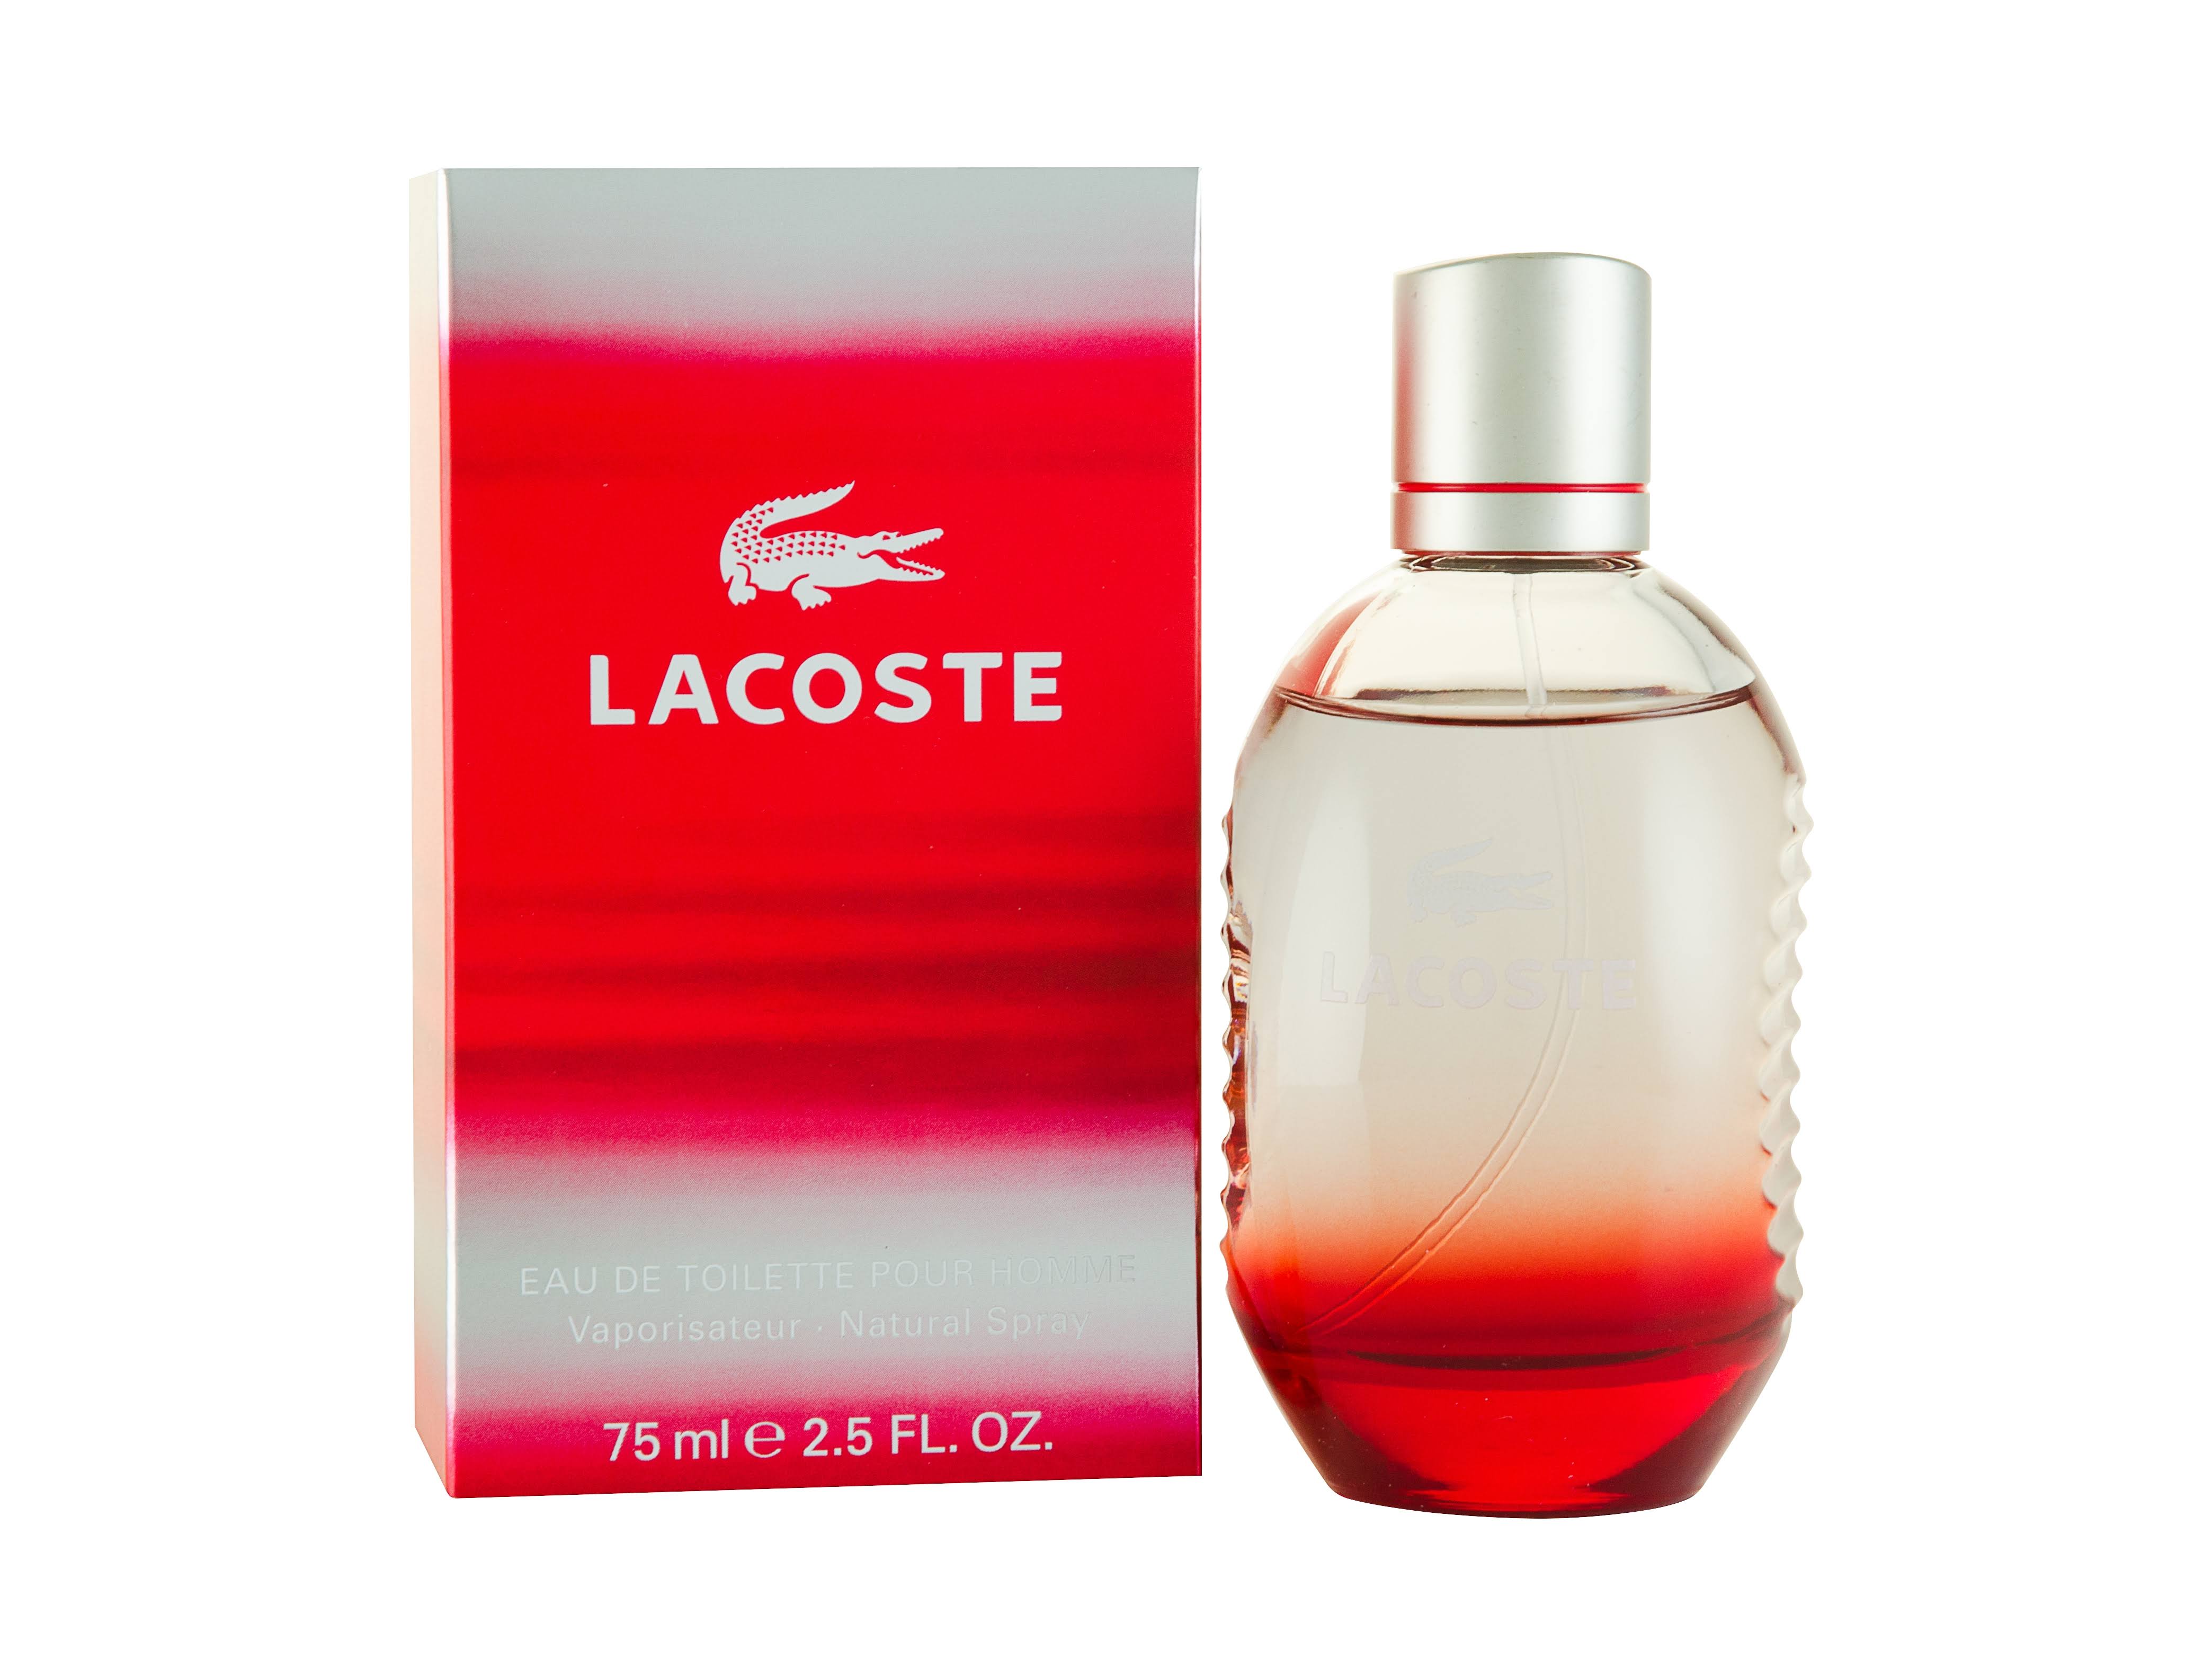 Lacoste Style in Play Eau de Toilette Spray for Men - 75ml